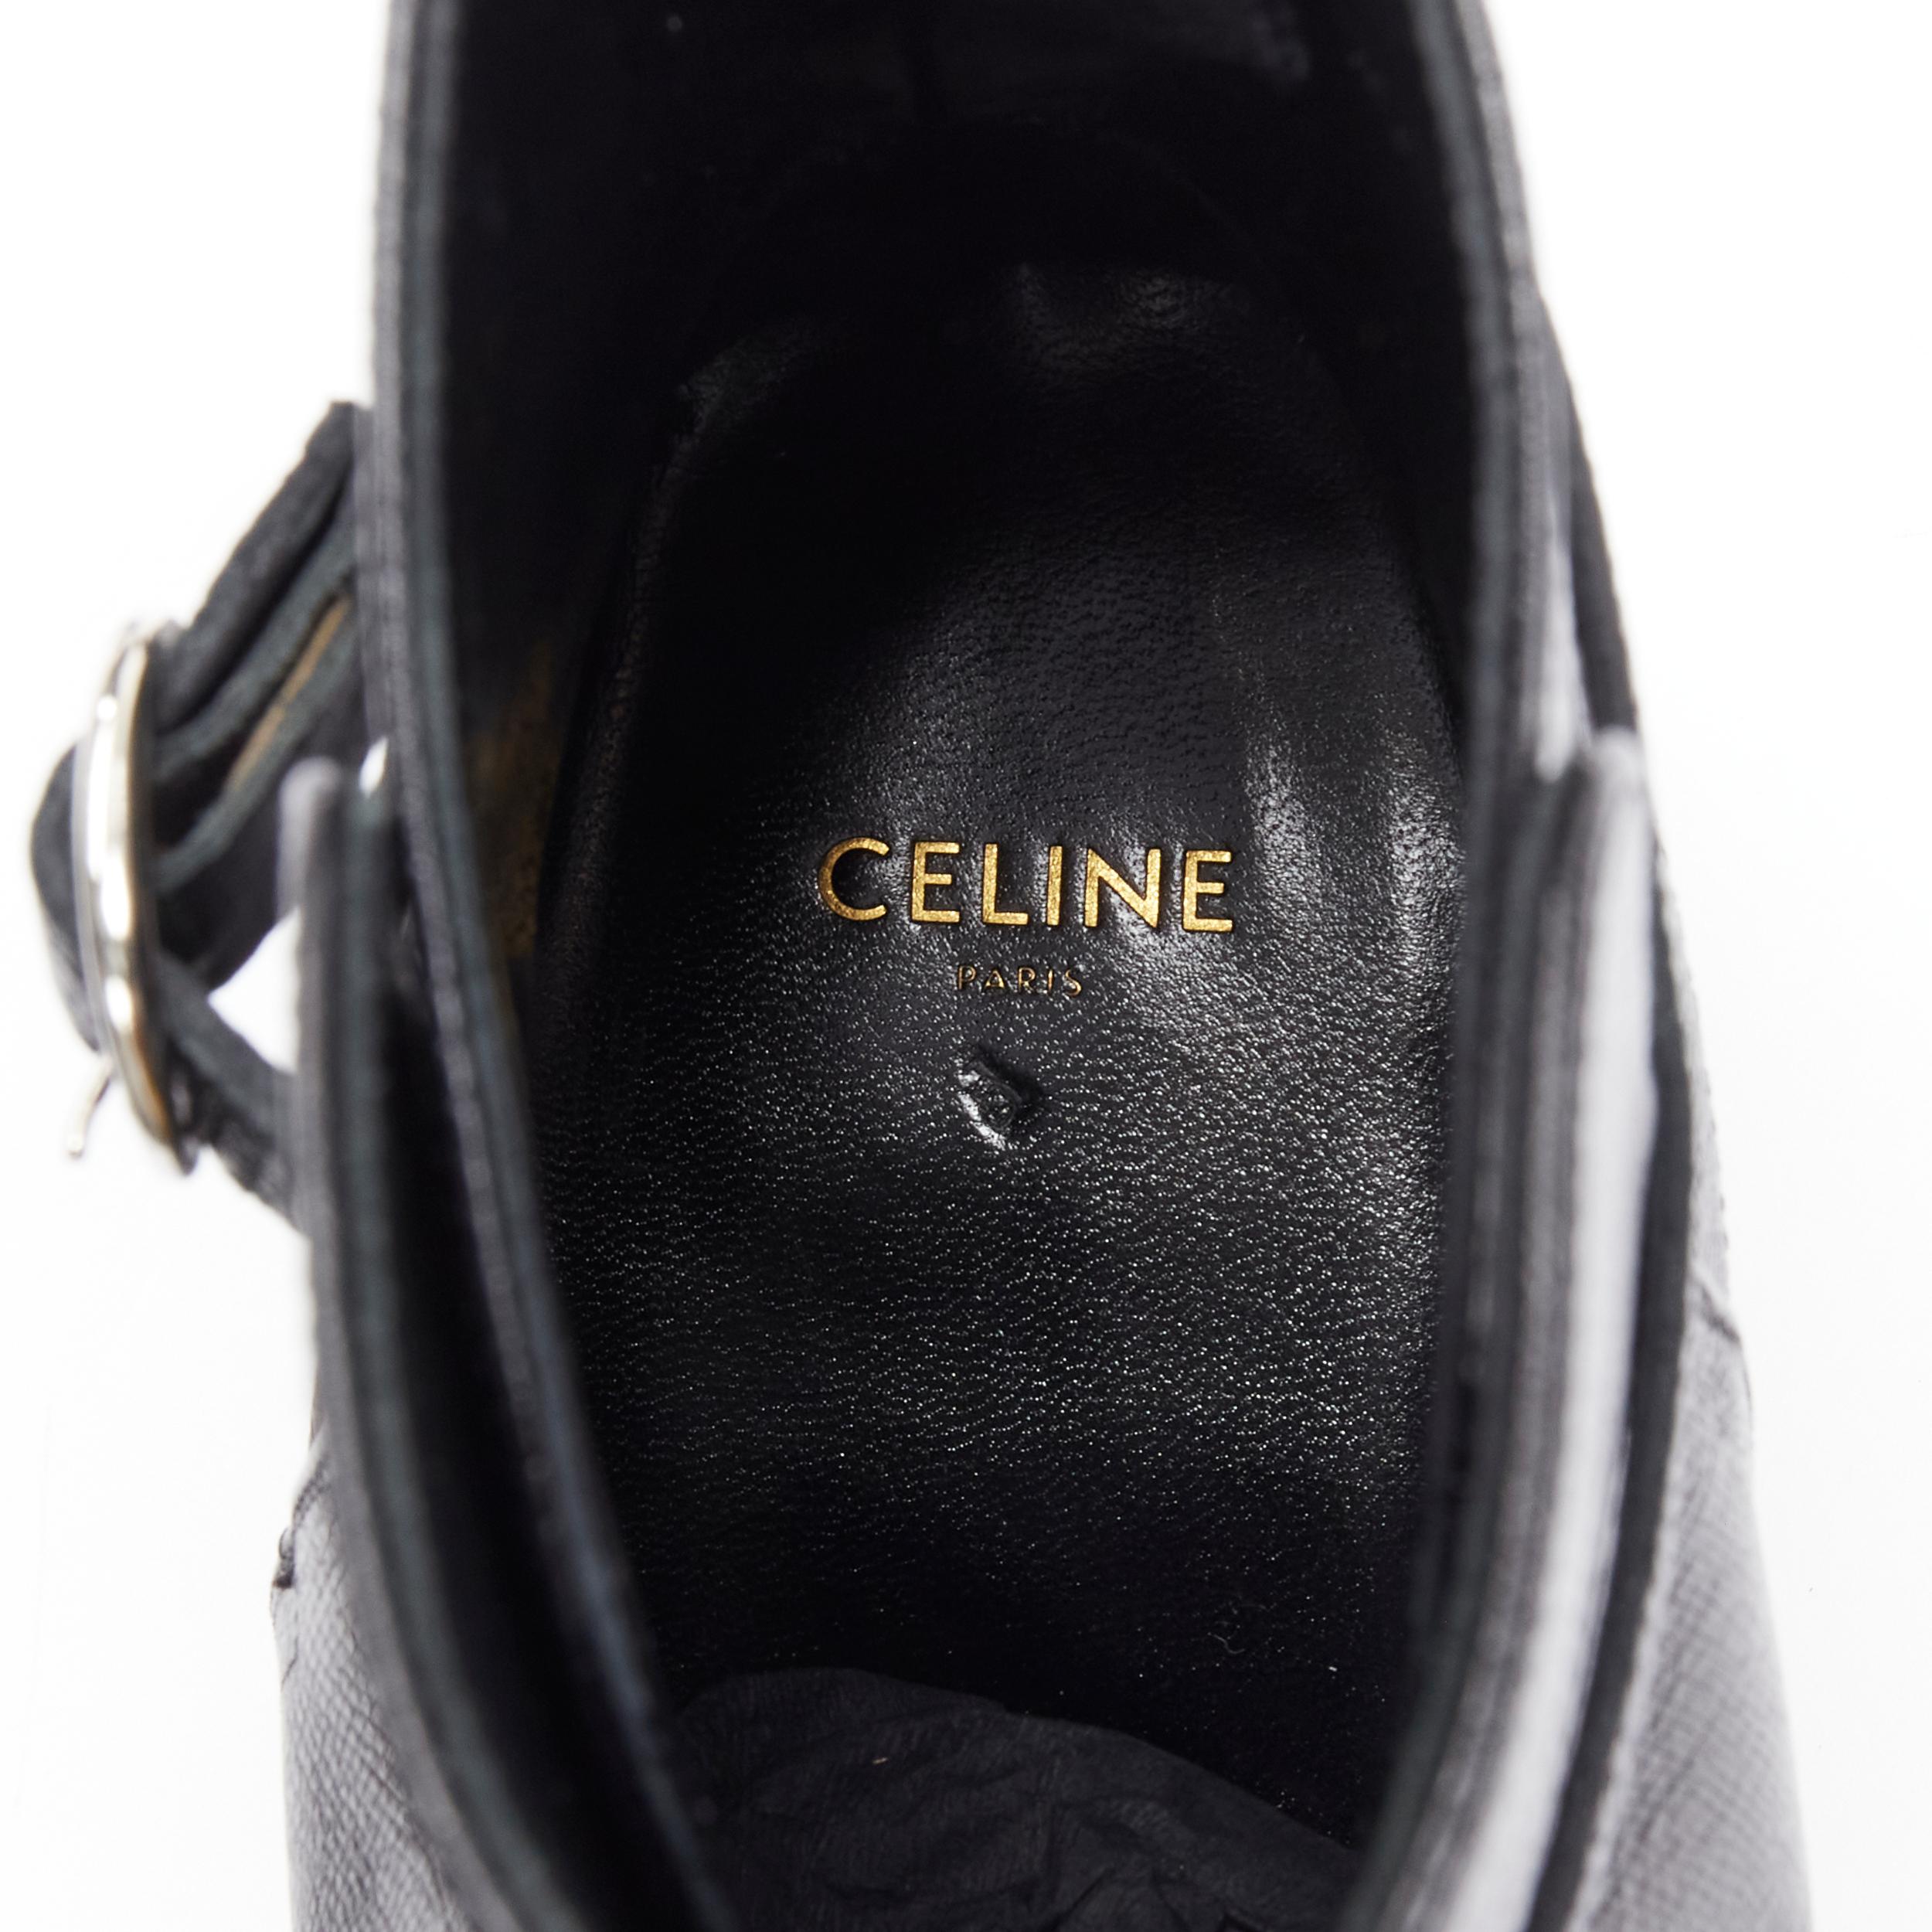 new CELINE Hedi Slimane Jacno Black Tejus stamped leather ankle strap boot EU42 3